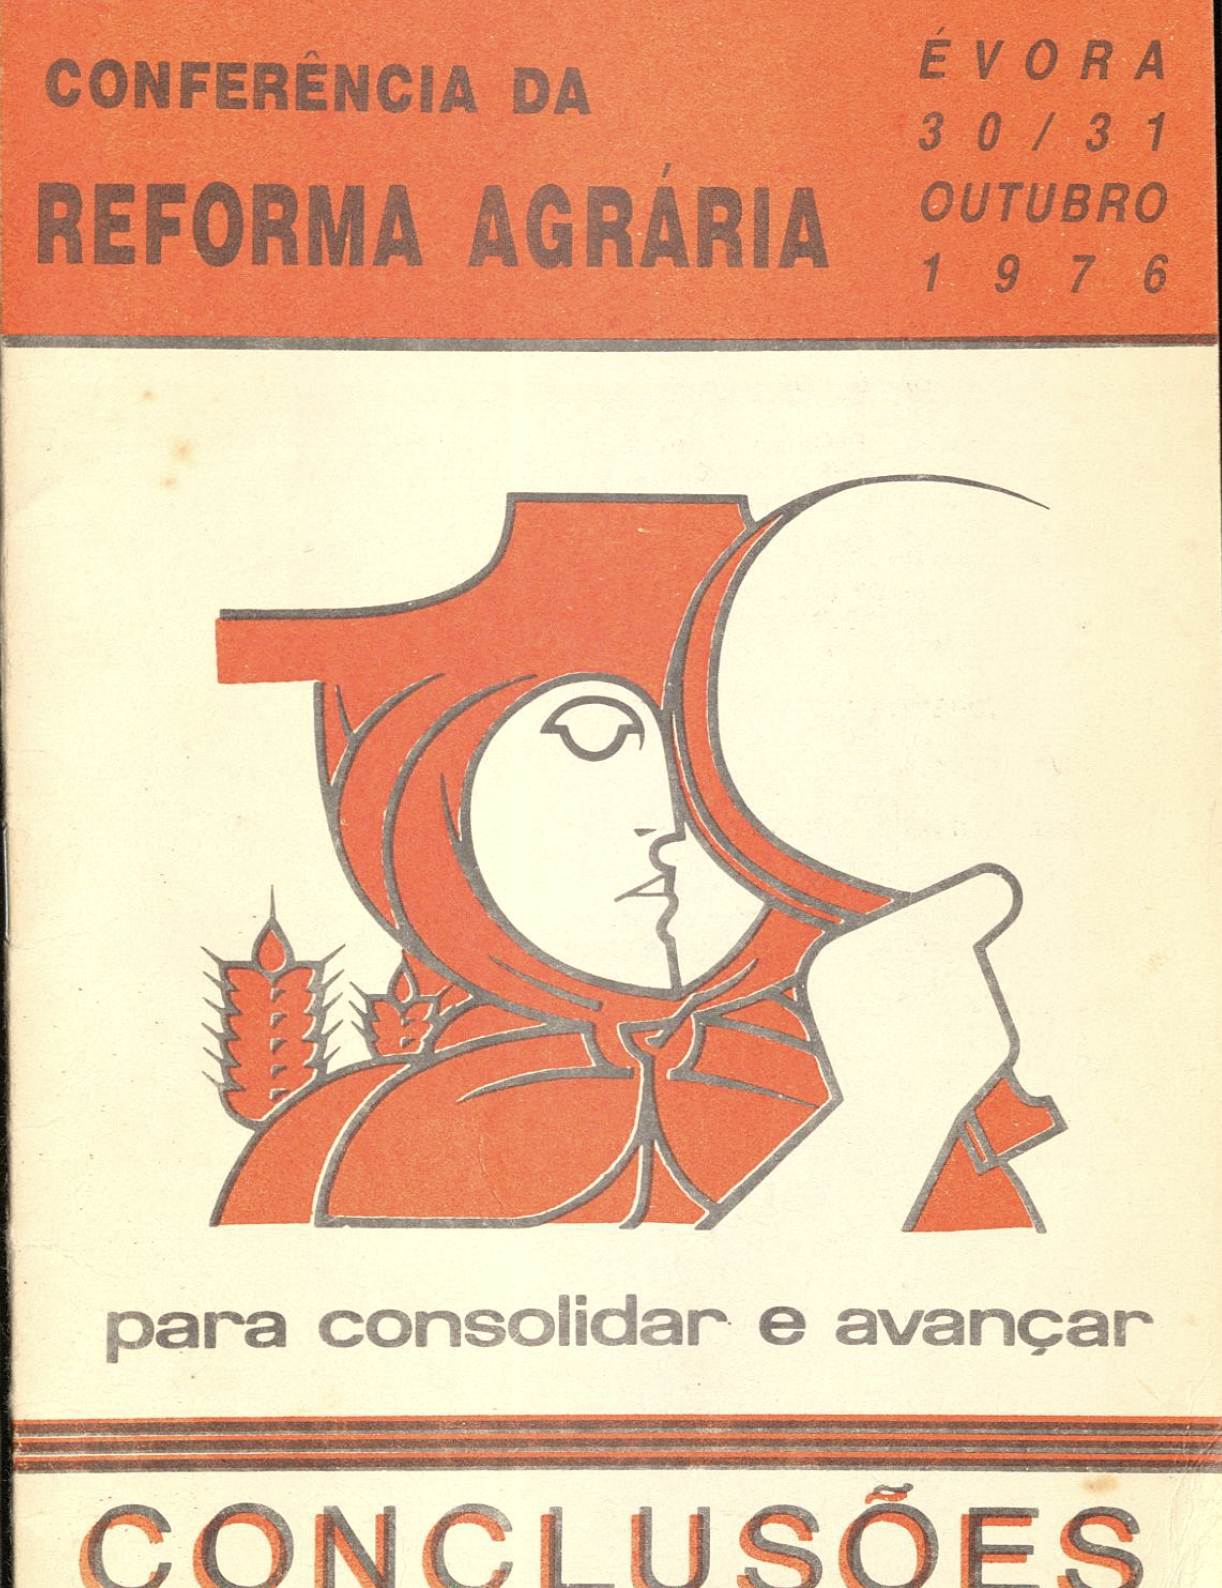 Conferência da Reforma Agrária Évora